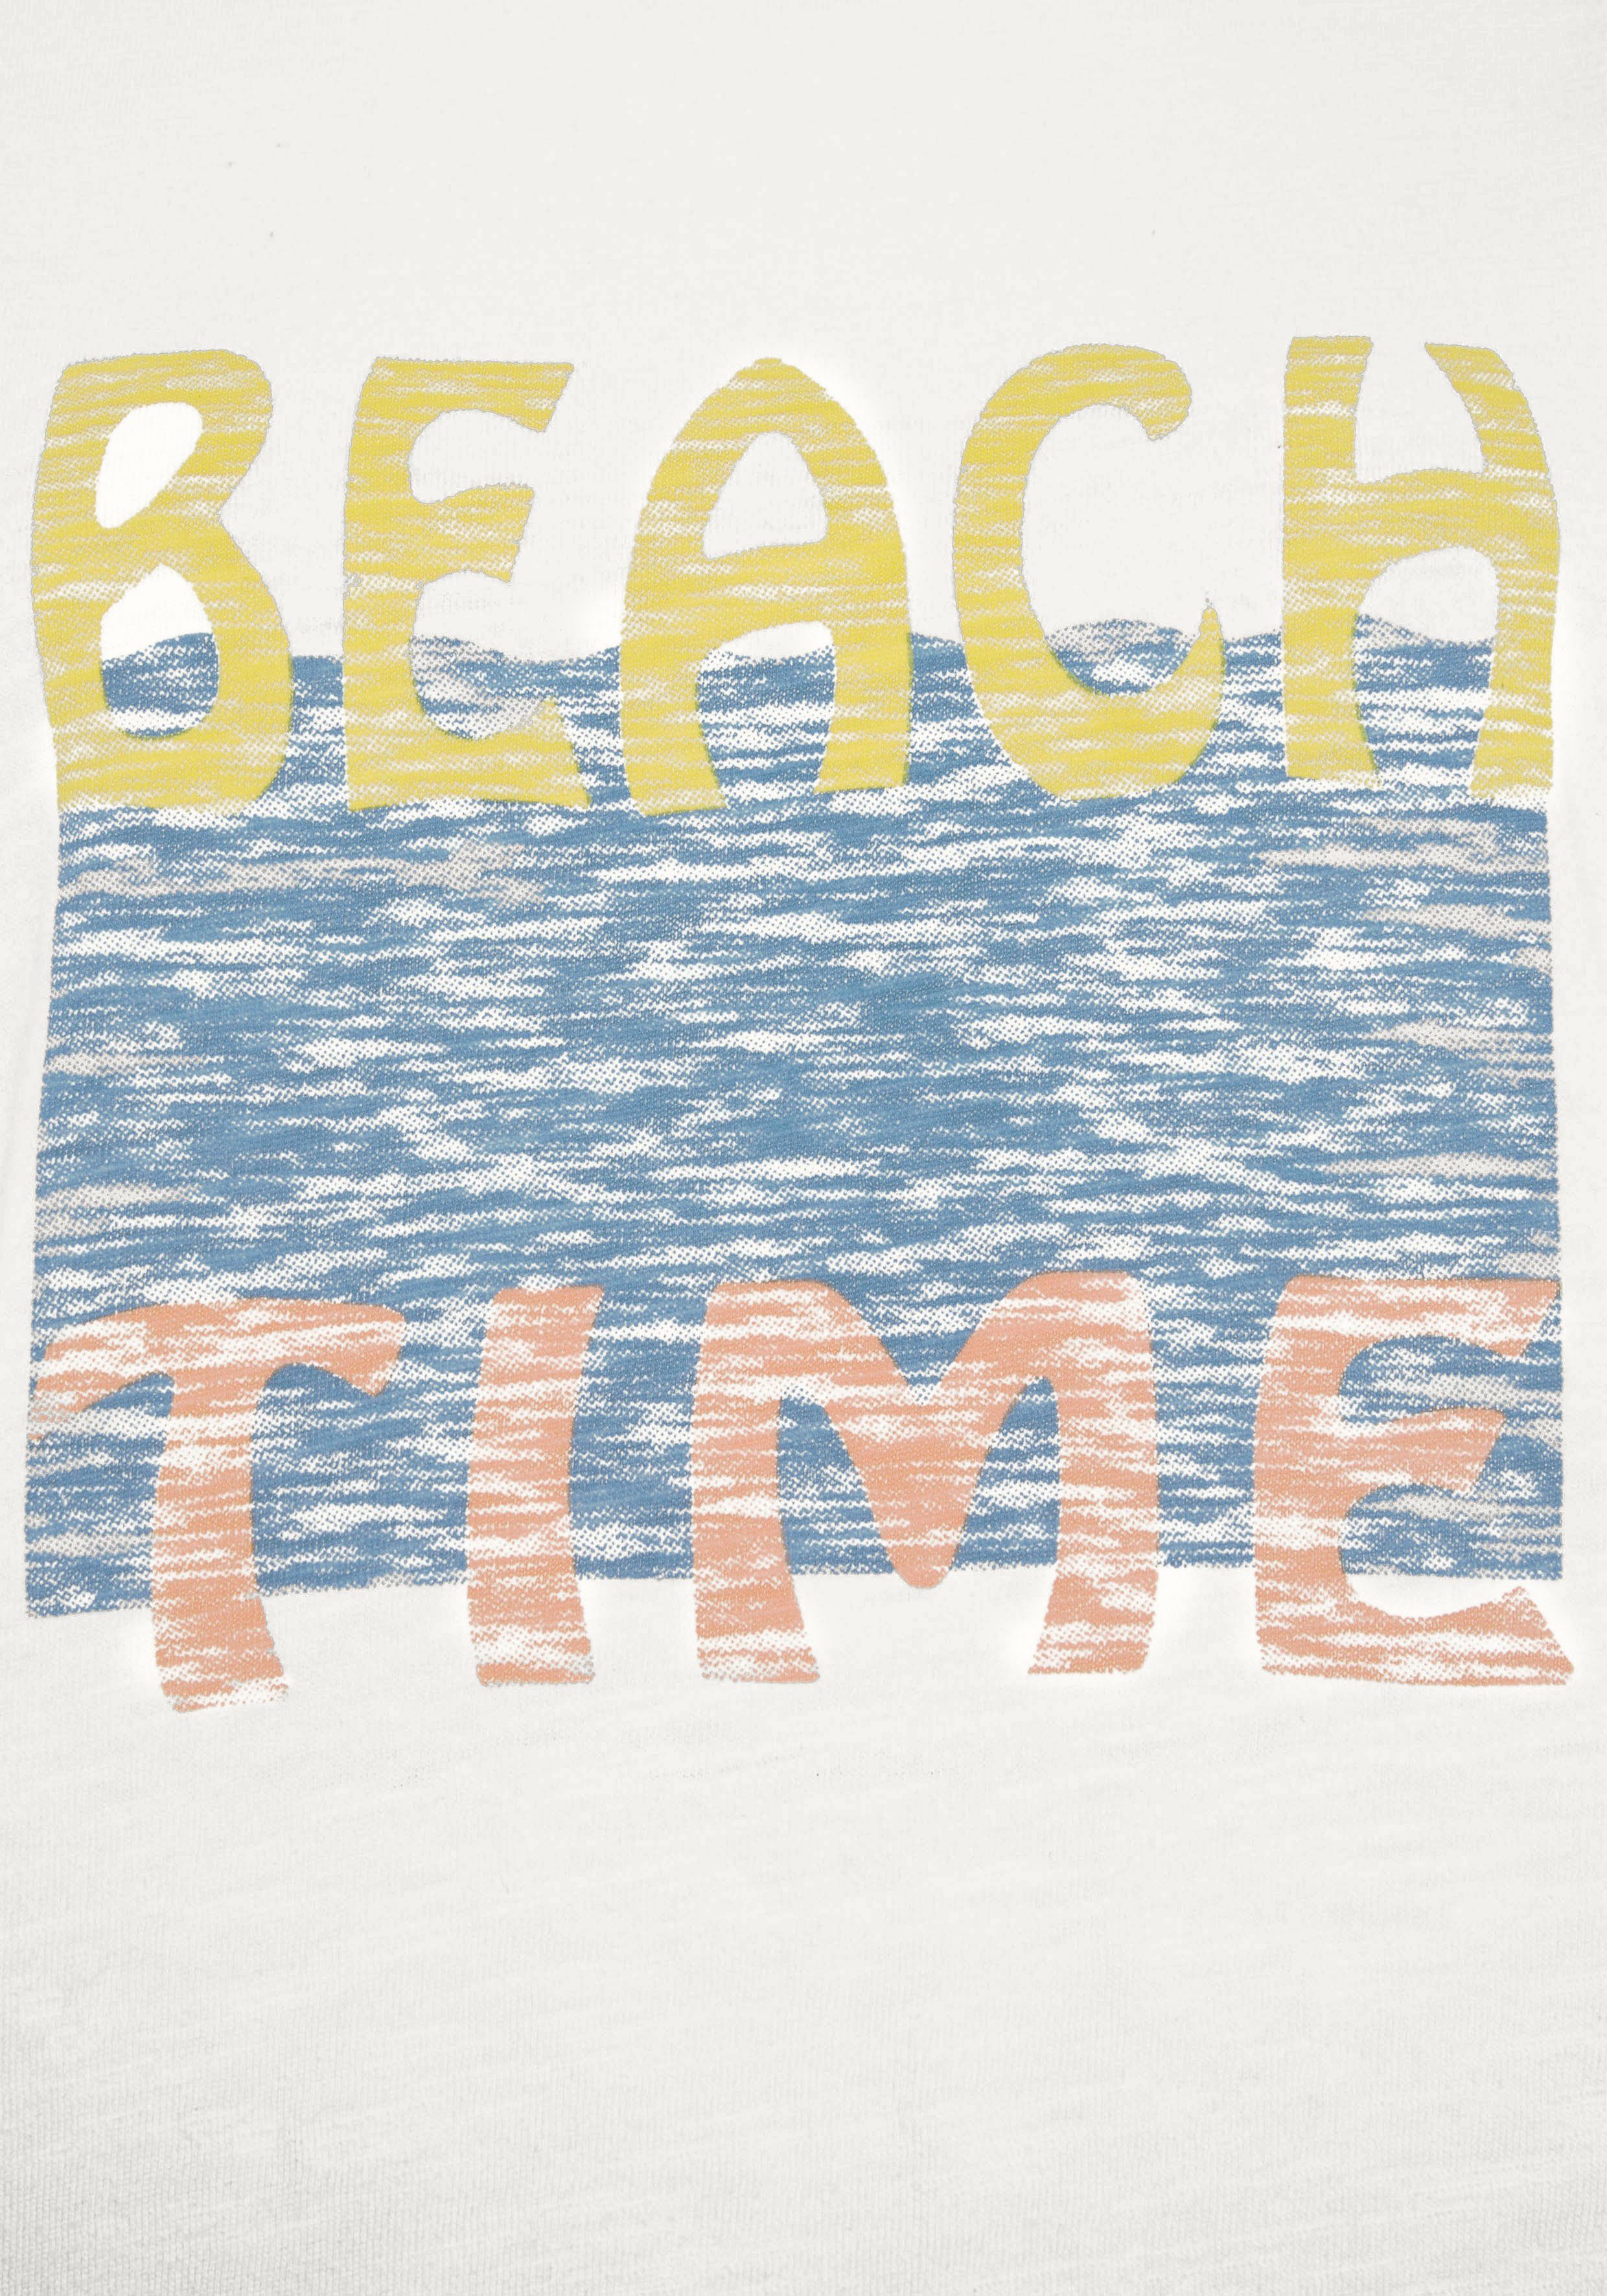 verschiedenen Beachtime Drucken (Packung, T-Shirt mit 2-tlg) zwei